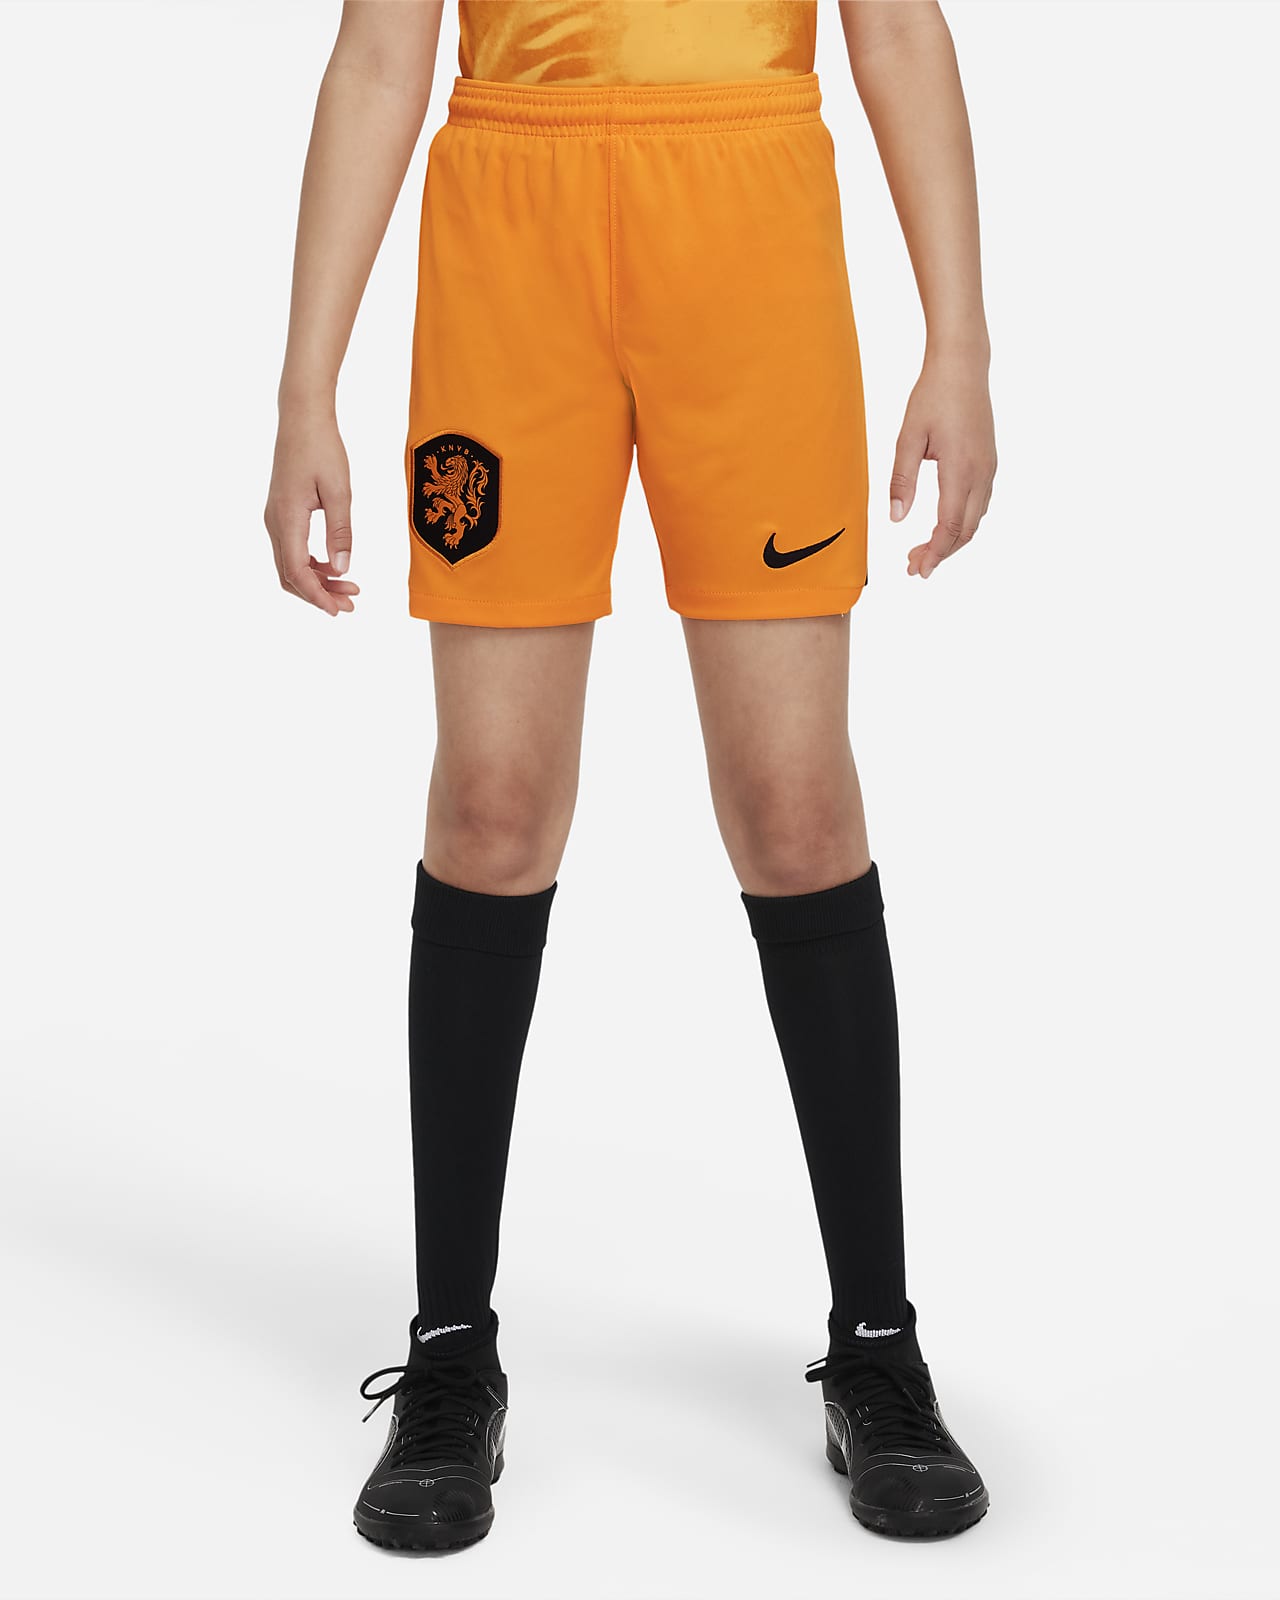 Primera equipación Stadium Países Bajos 2022/23 Pantalón corto de fútbol Nike Dri-FIT - Niño/a. Nike